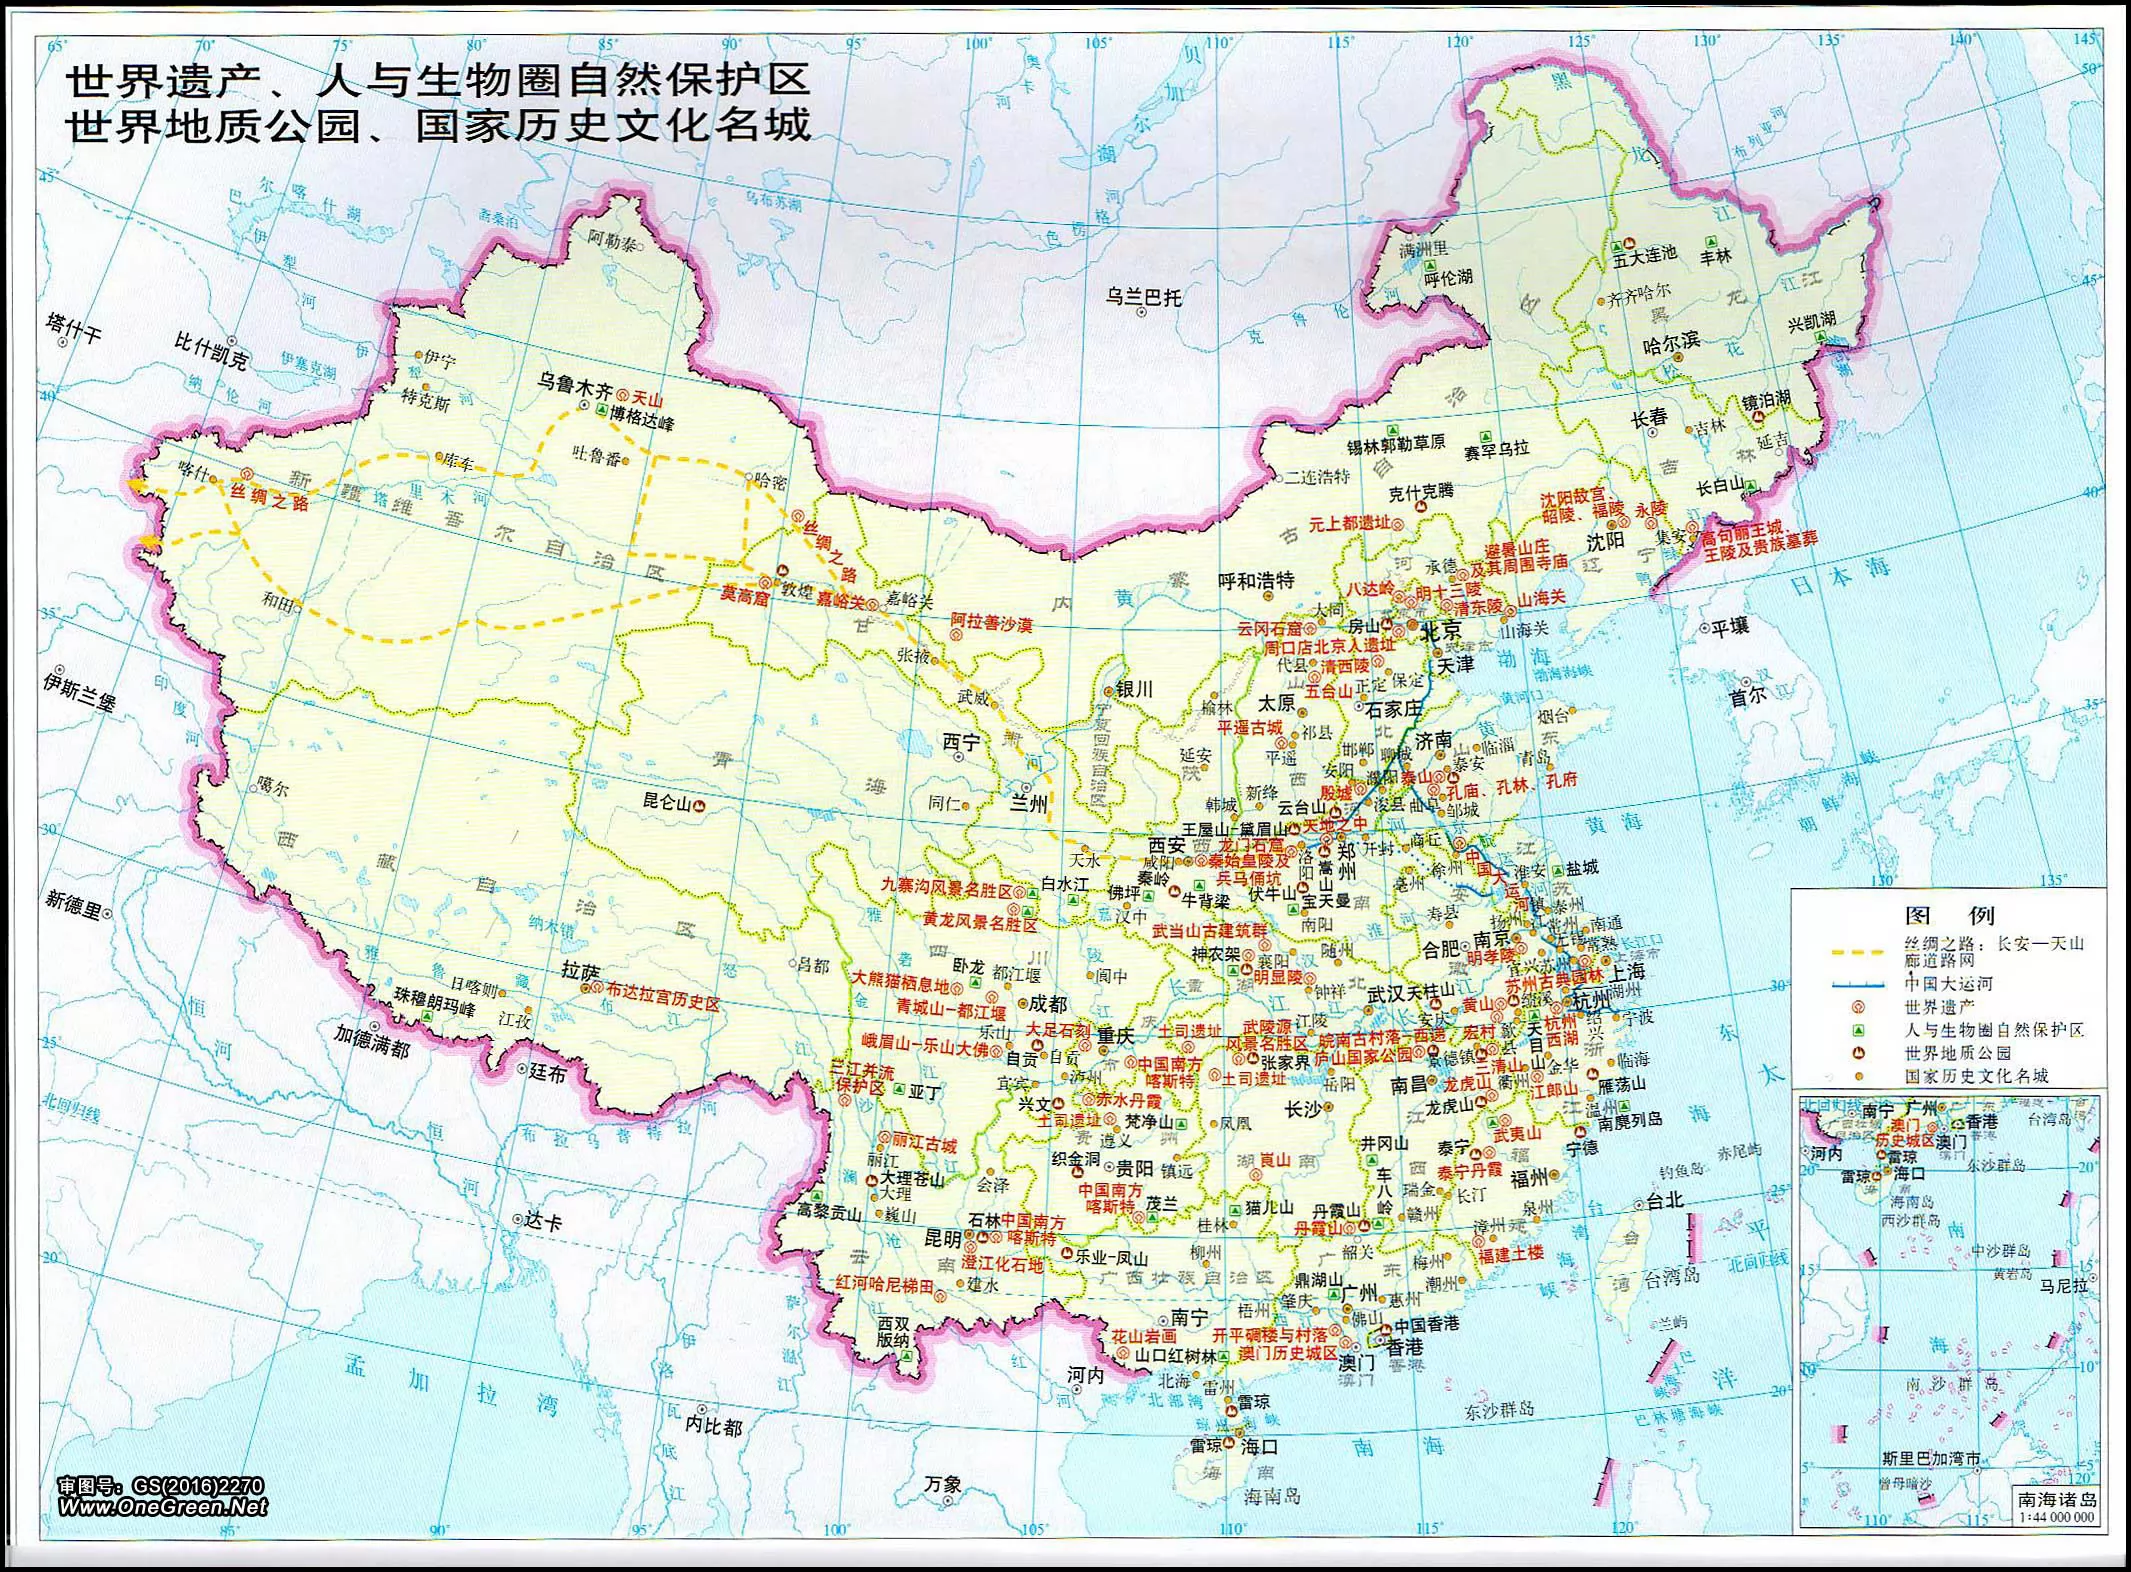 中国顶级旅游景点分布图 - 中国旅游地图 - 地理教师网